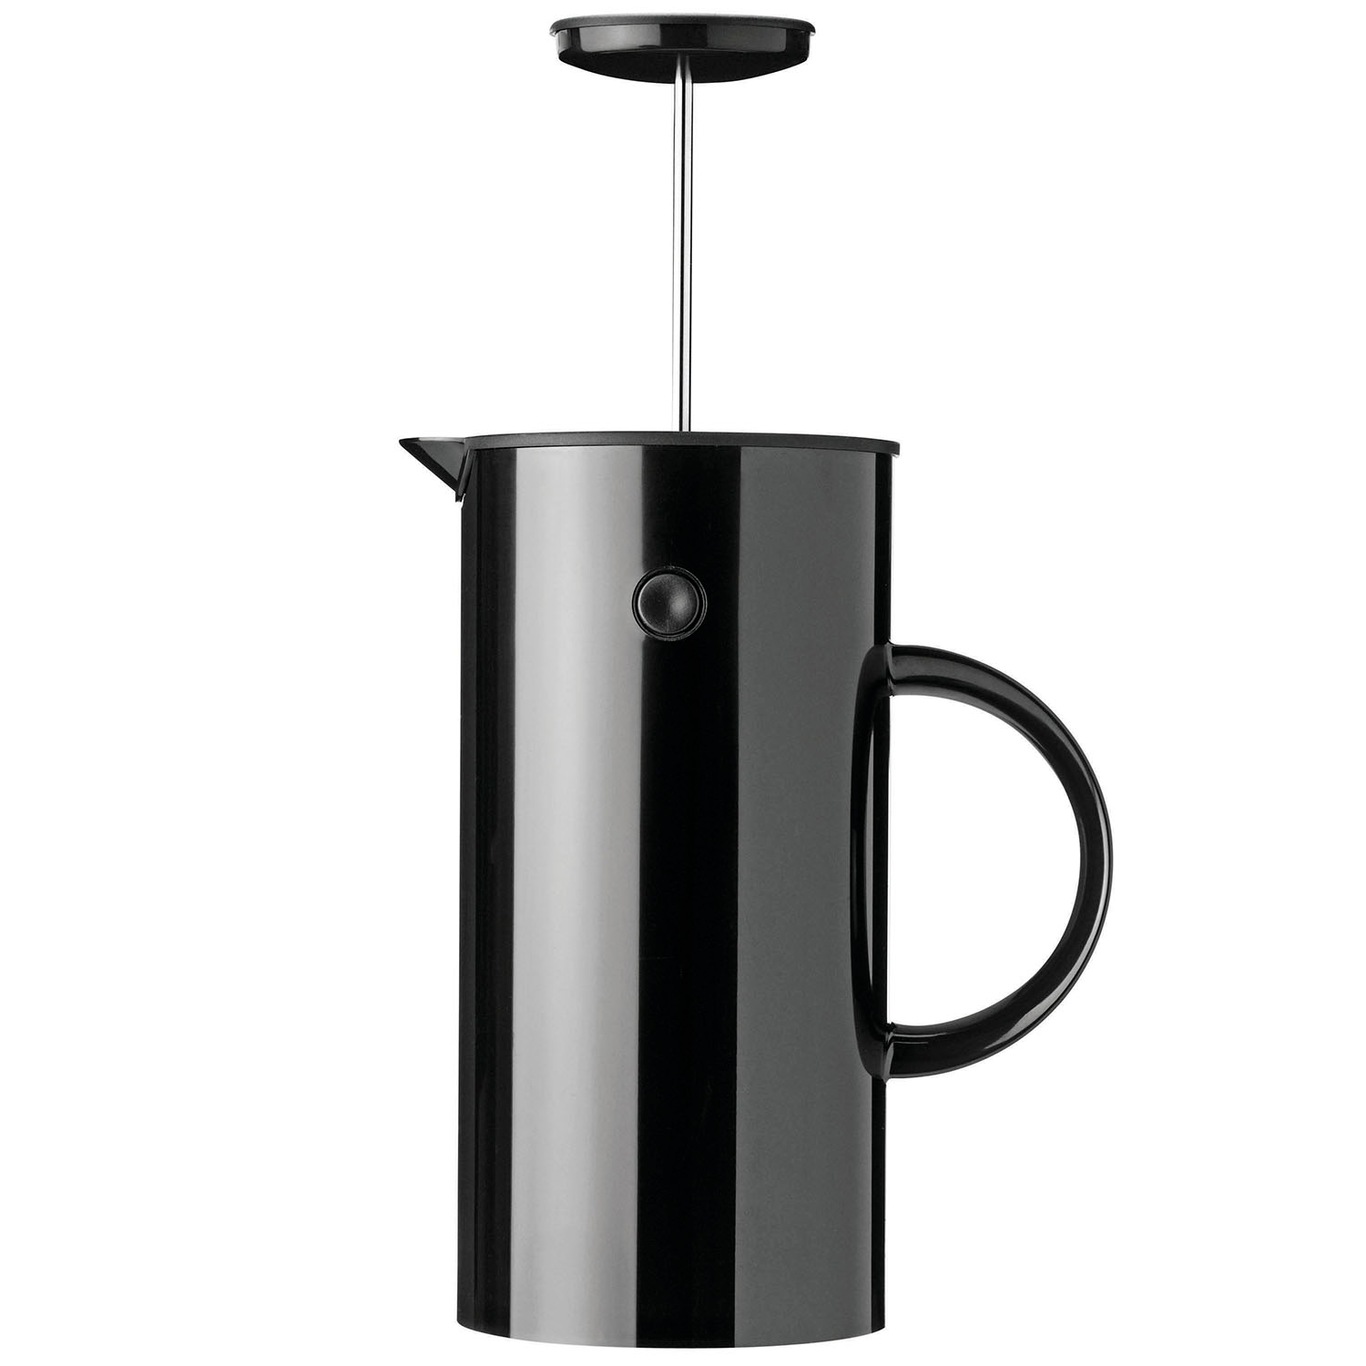 EM Classic Press Coffee Maker 1 L, Black